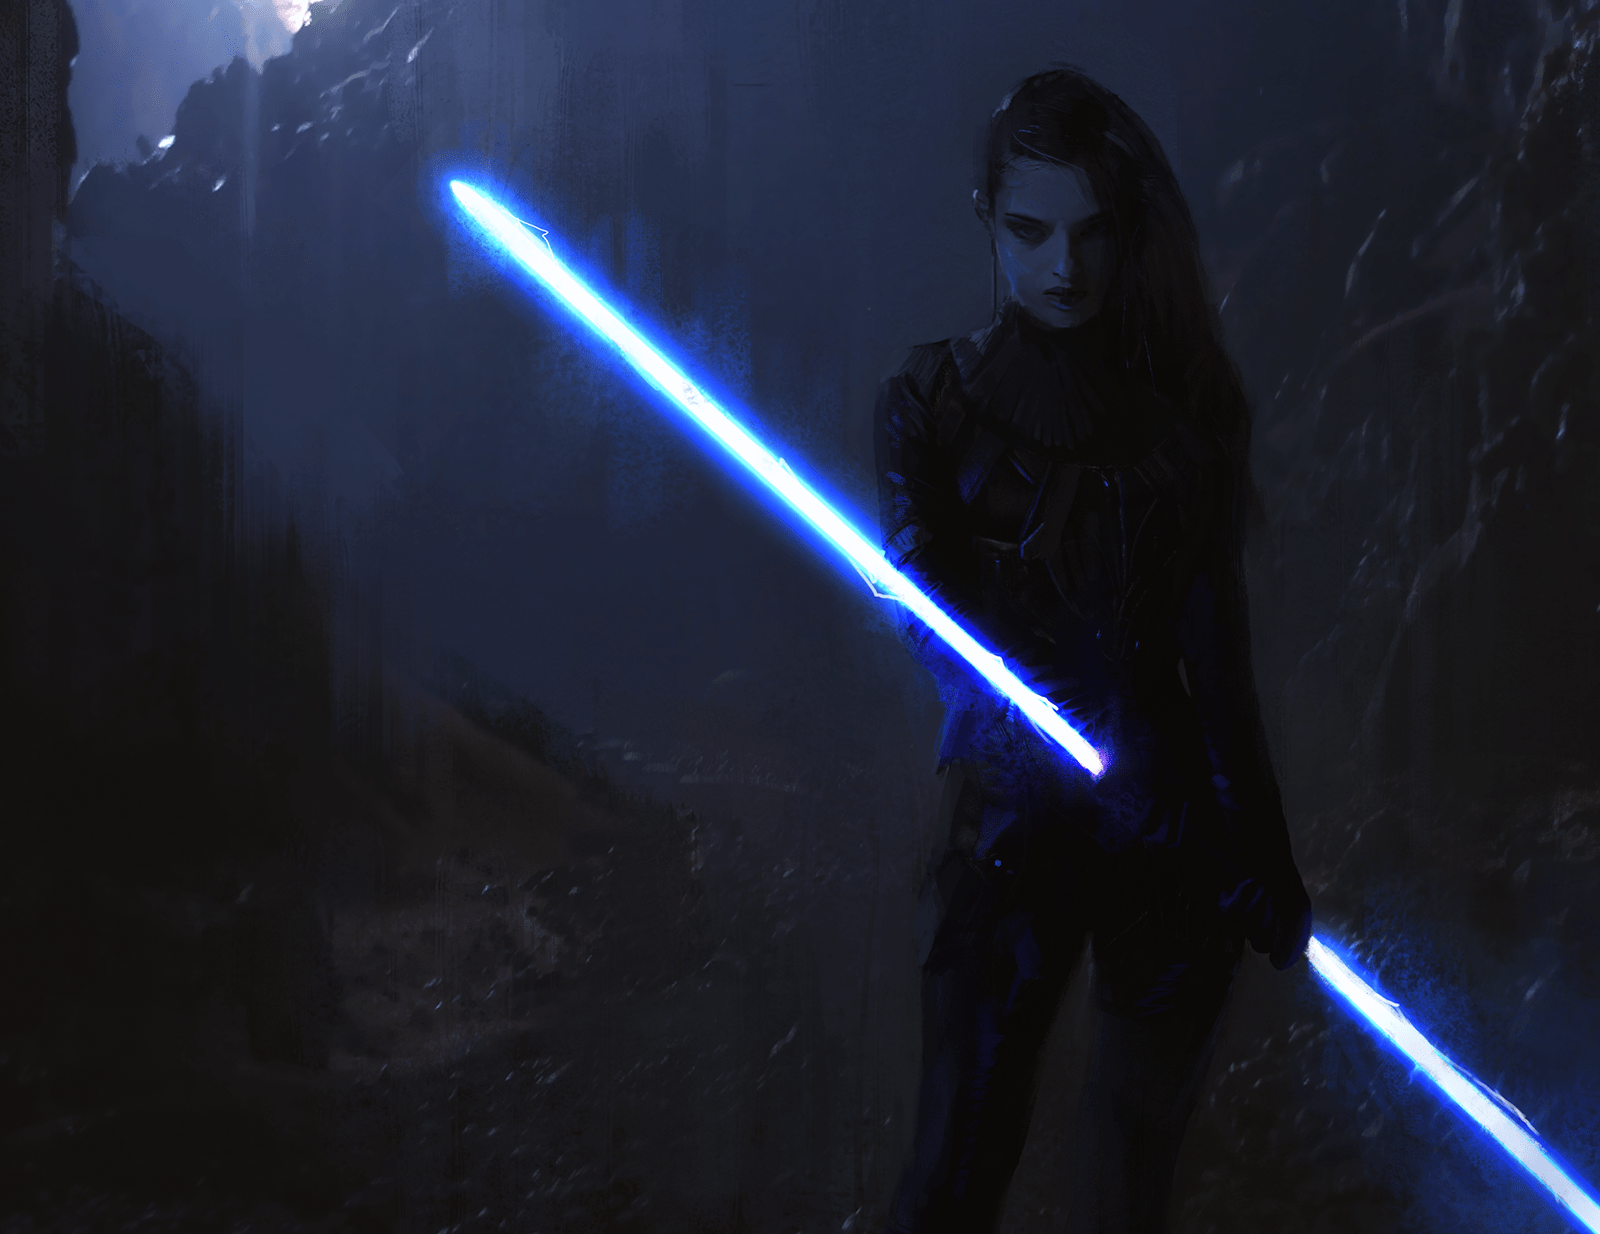 Star Wars Darth Vader w blu lightsaber wallpaper by sedemsto on DeviantArt